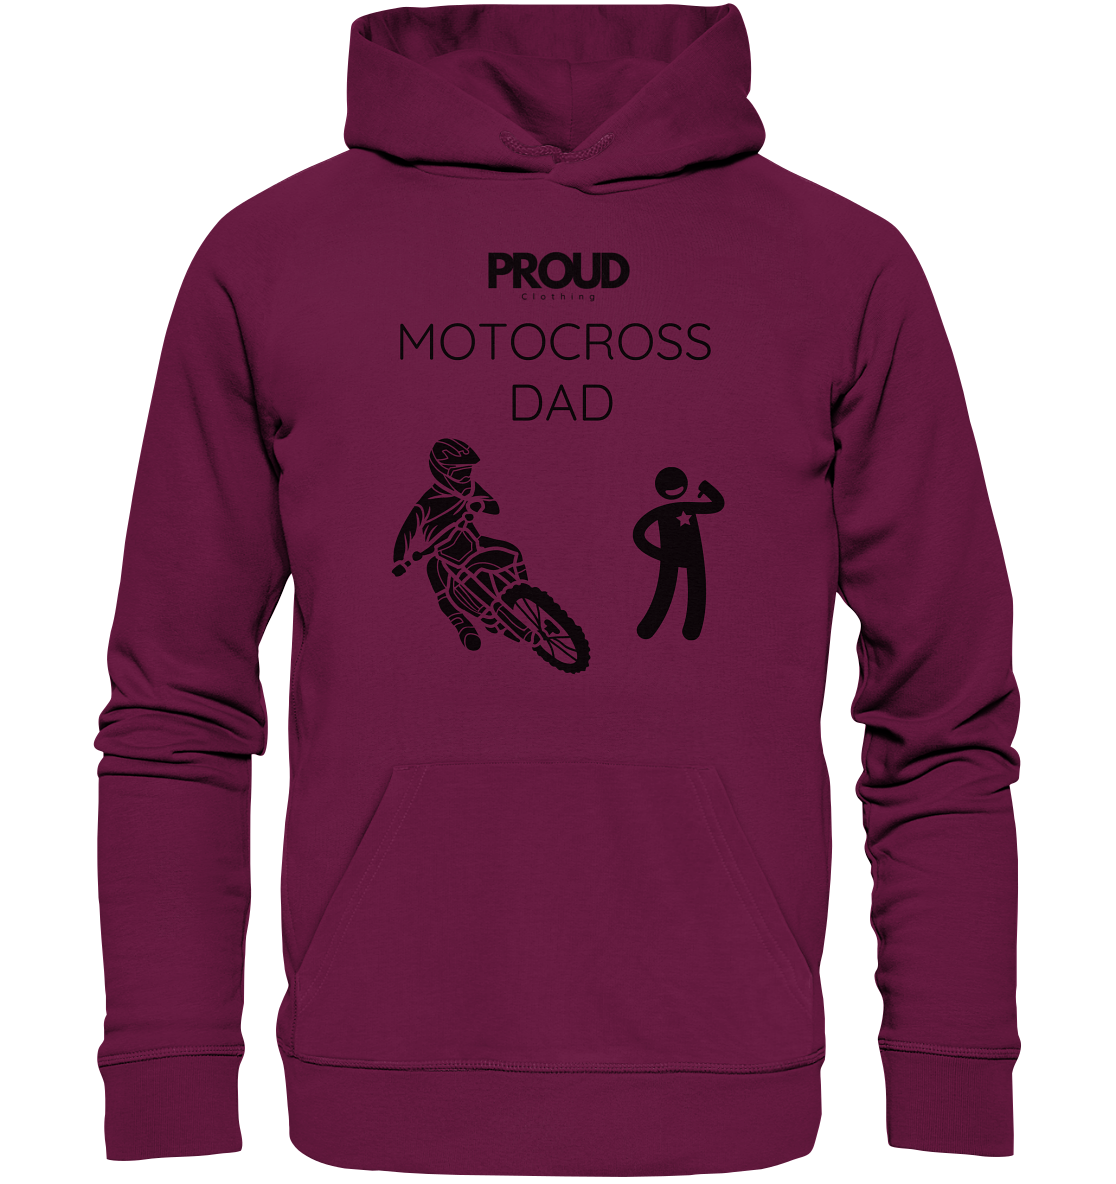 Motocross DAD - Premium Unisex Hoodie